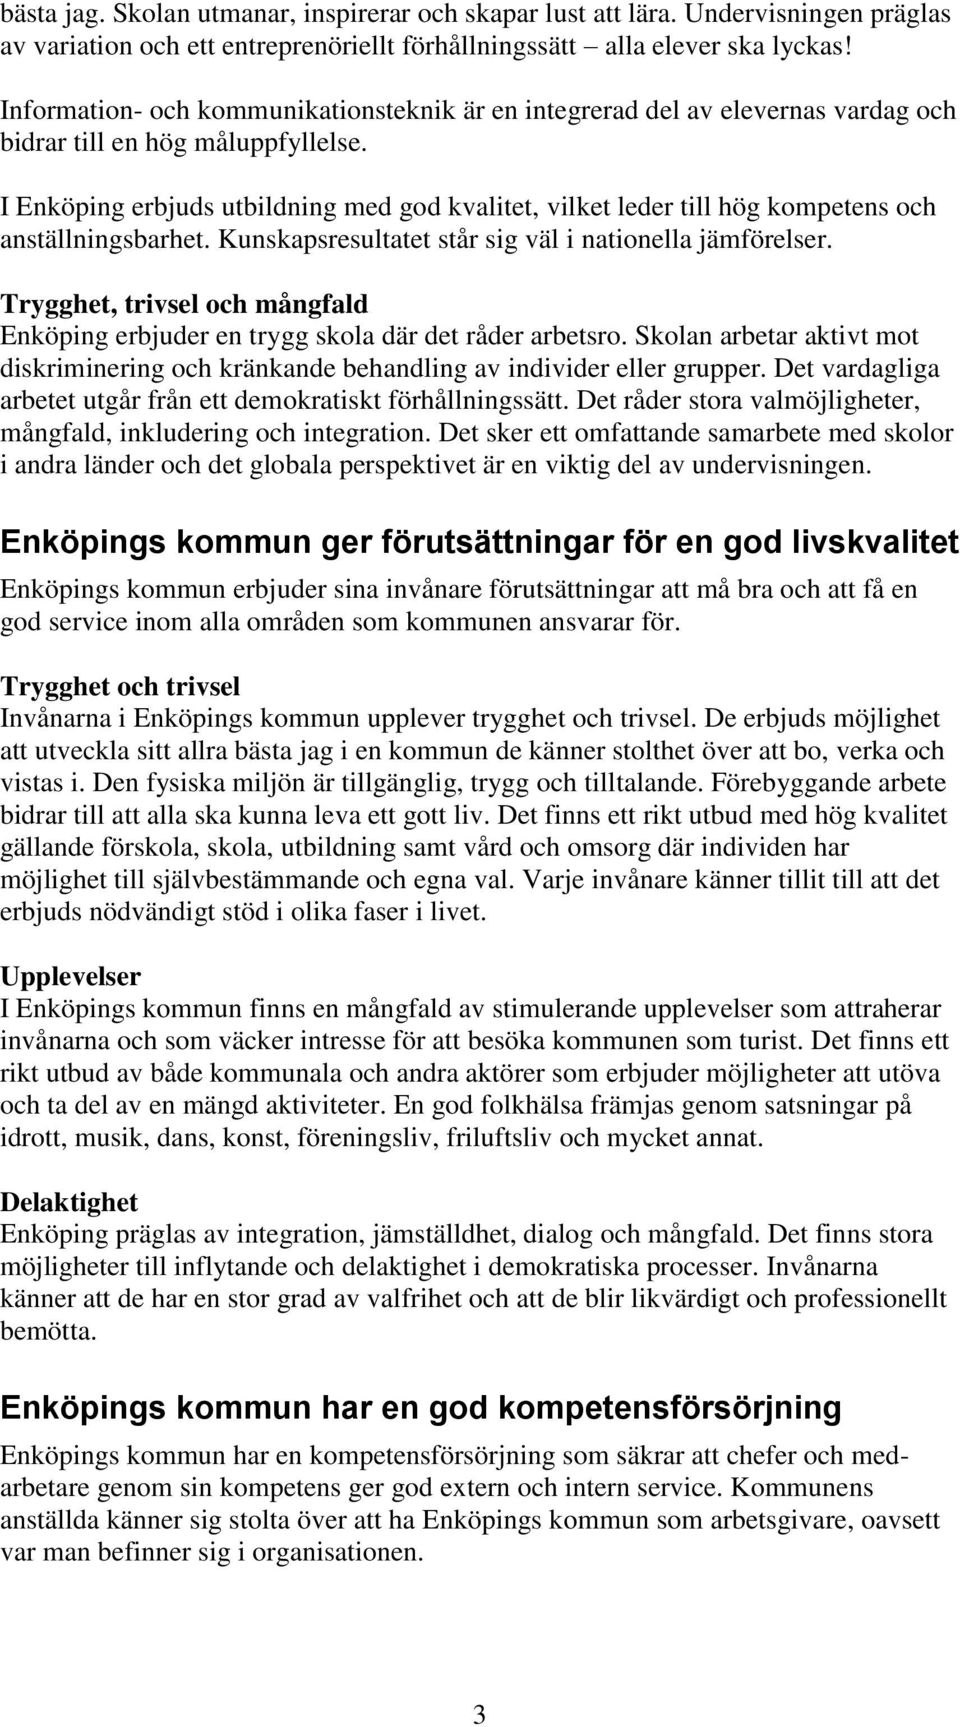 I Enköping erbjuds utbildning med god kvalitet, vilket leder till hög kompetens och anställningsbarhet. Kunskapsresultatet står sig väl i nationella jämförelser.